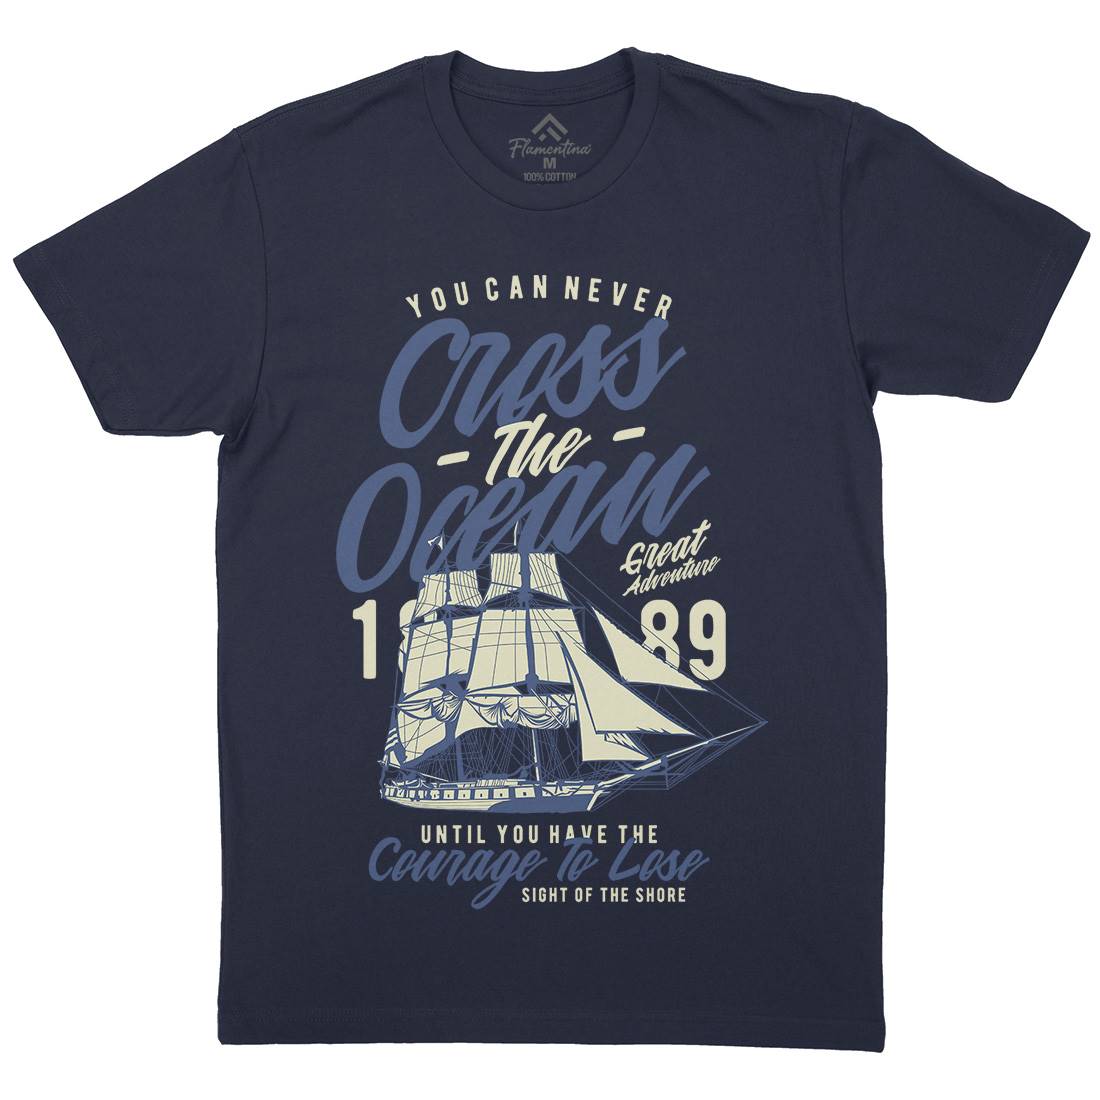 Cross The Ocean Mens Crew Neck T-Shirt Navy A642